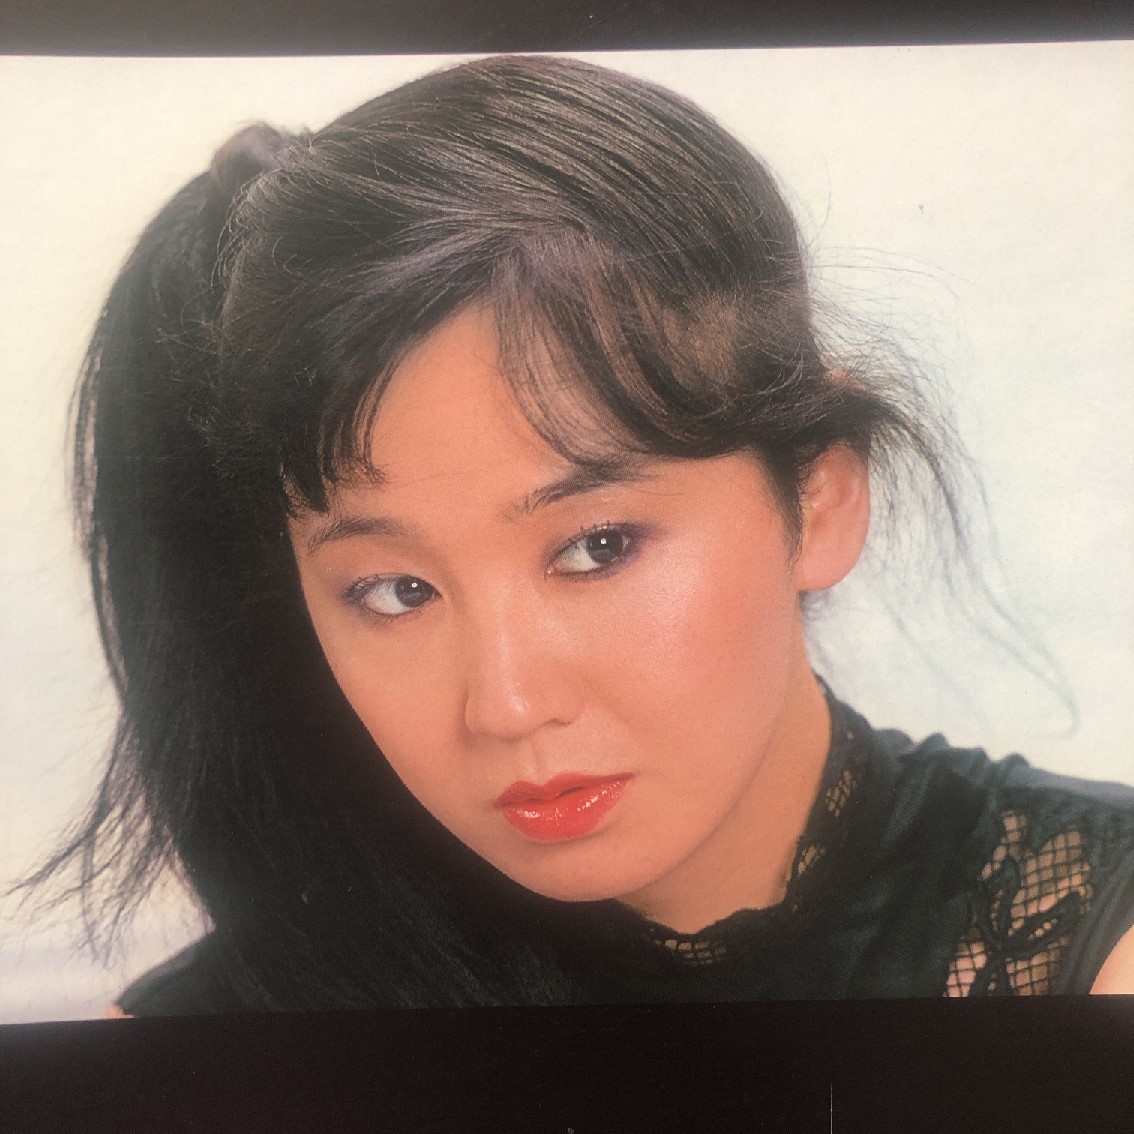 レア盤 松原留美子 Rumiko Matsubara 1981年 LPレコード ニューハーフ New Half 国内盤 オリジナルリリース盤 J-Pop_画像5